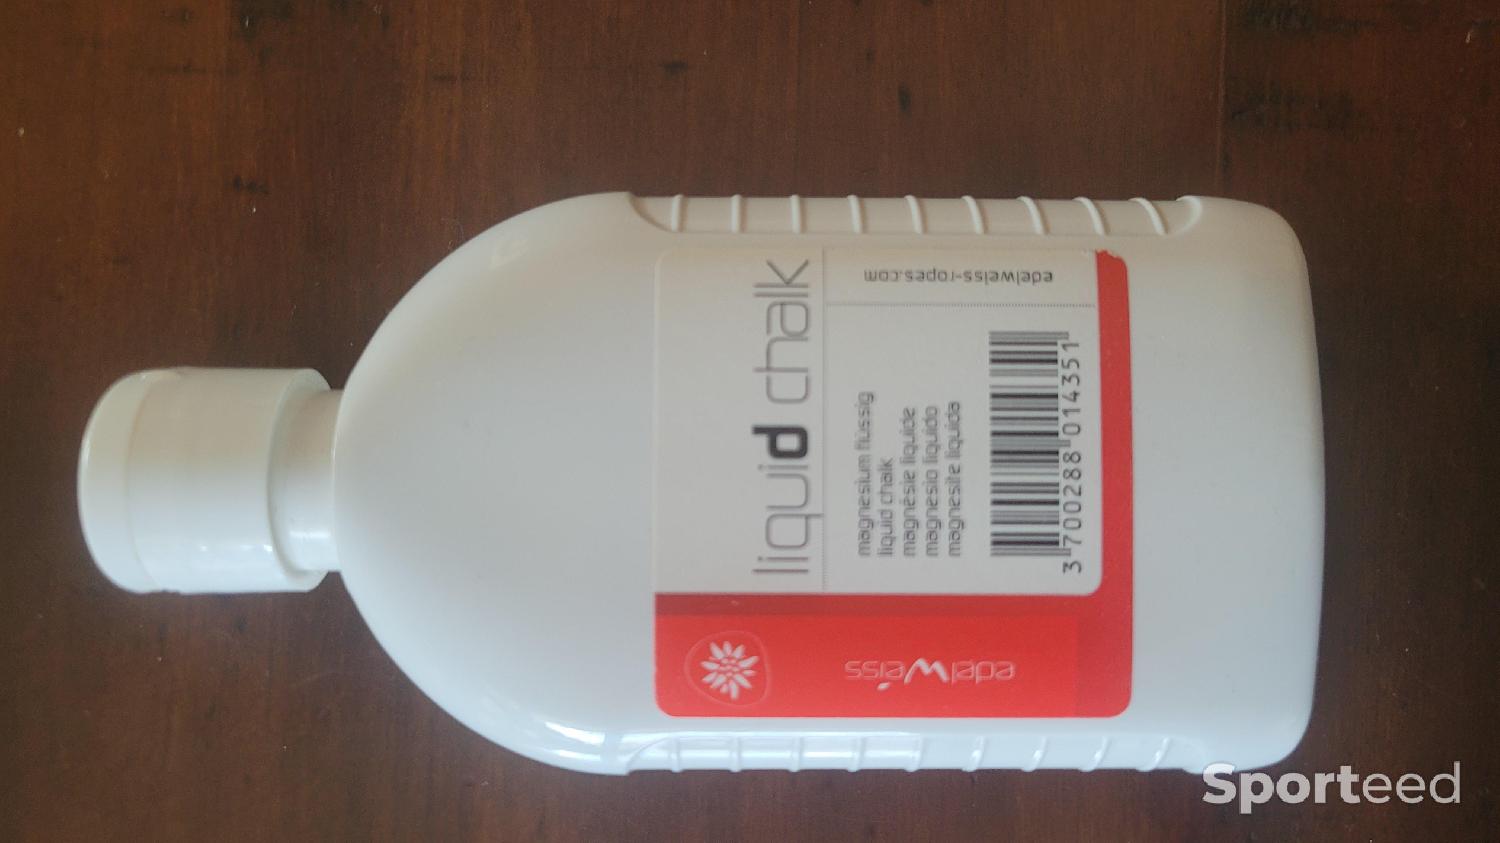 Edelweiss Liquid Chalk 250 ml magnésie liquide 36-pack